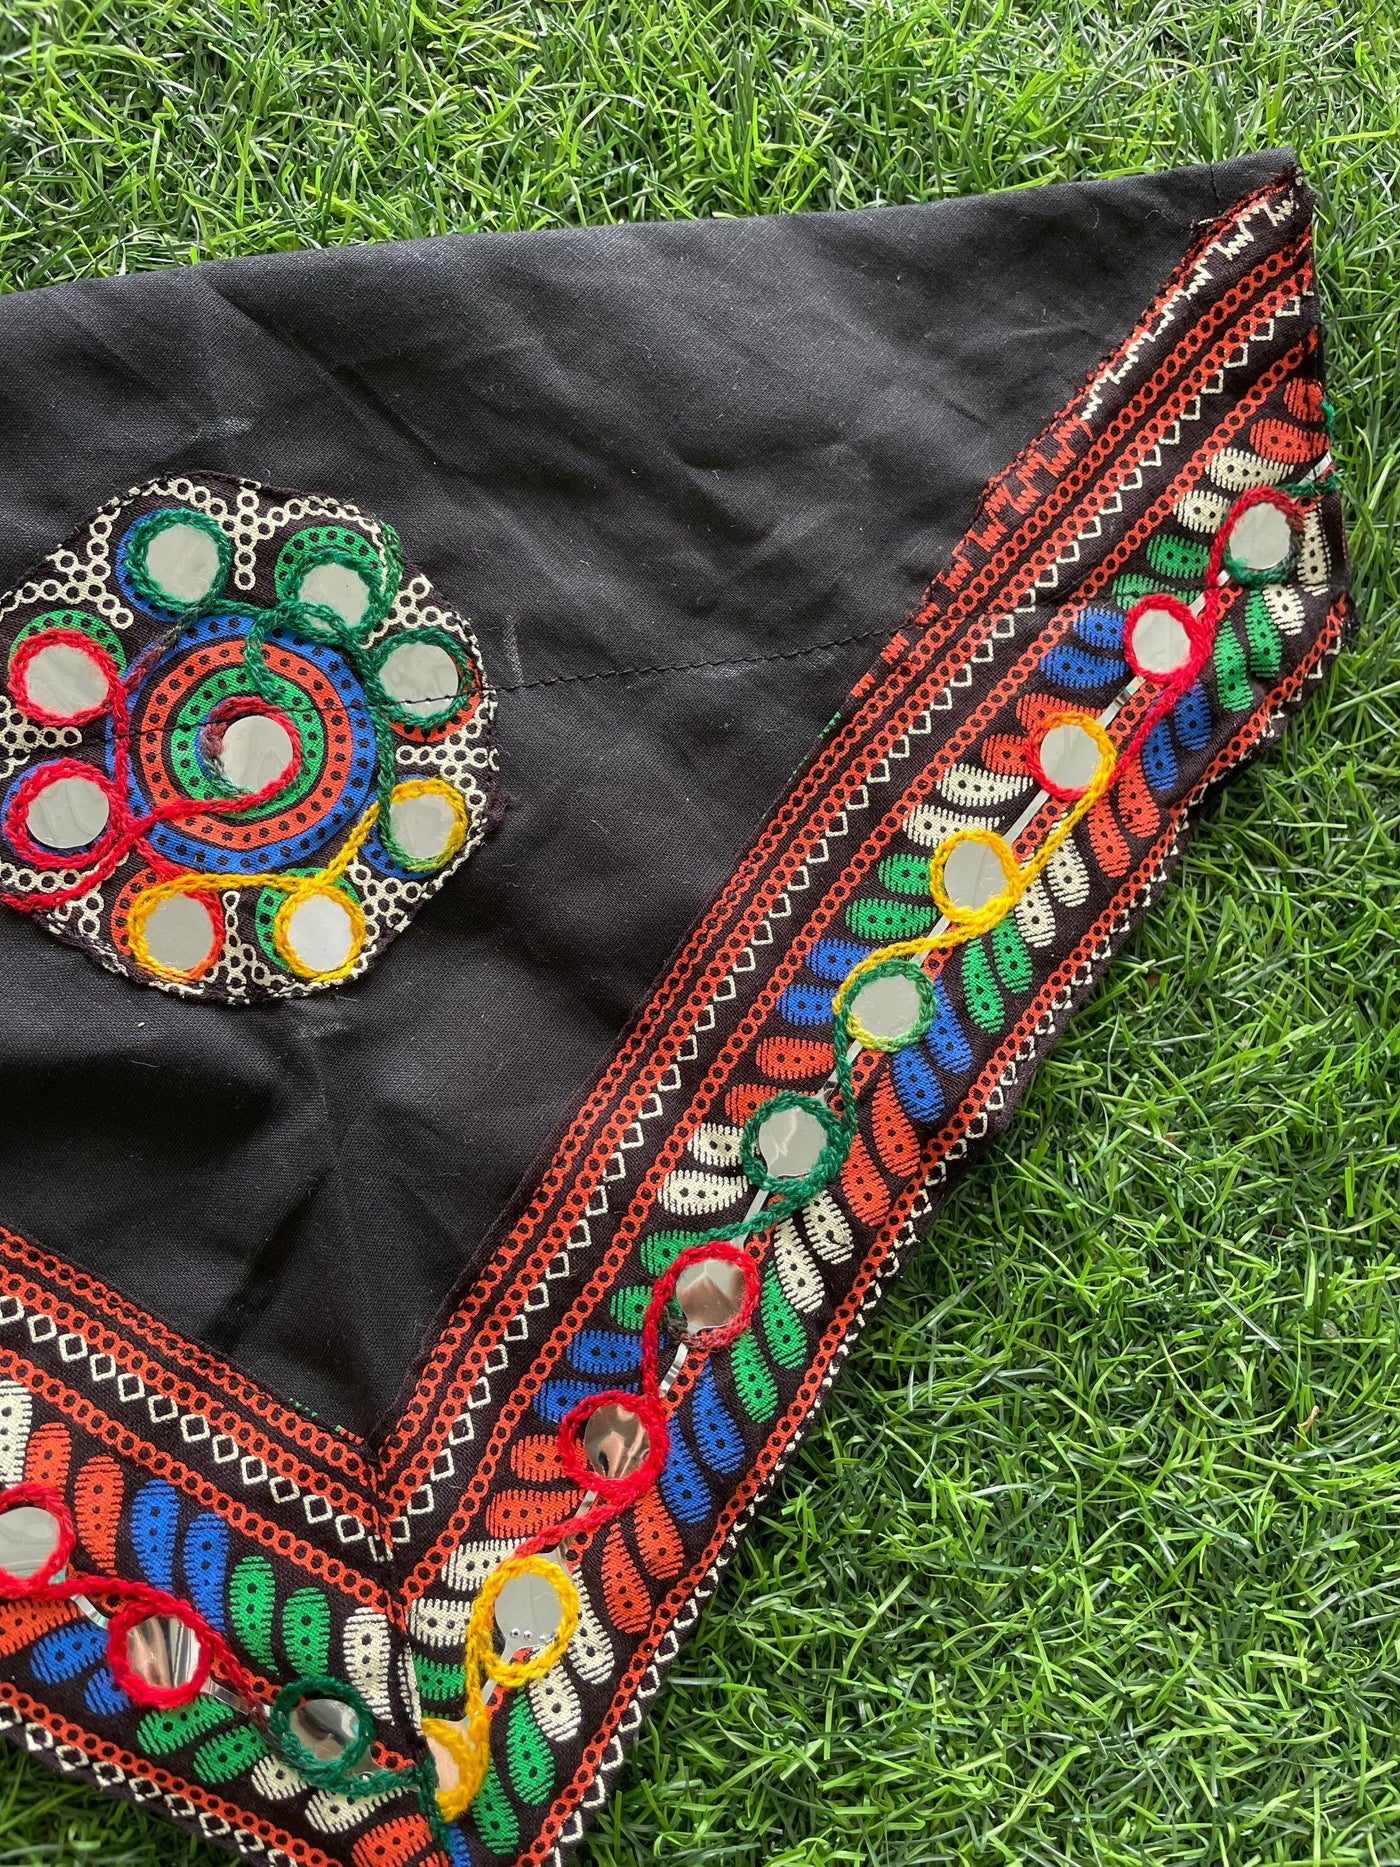 Kutch Embroidery Dog Bandana